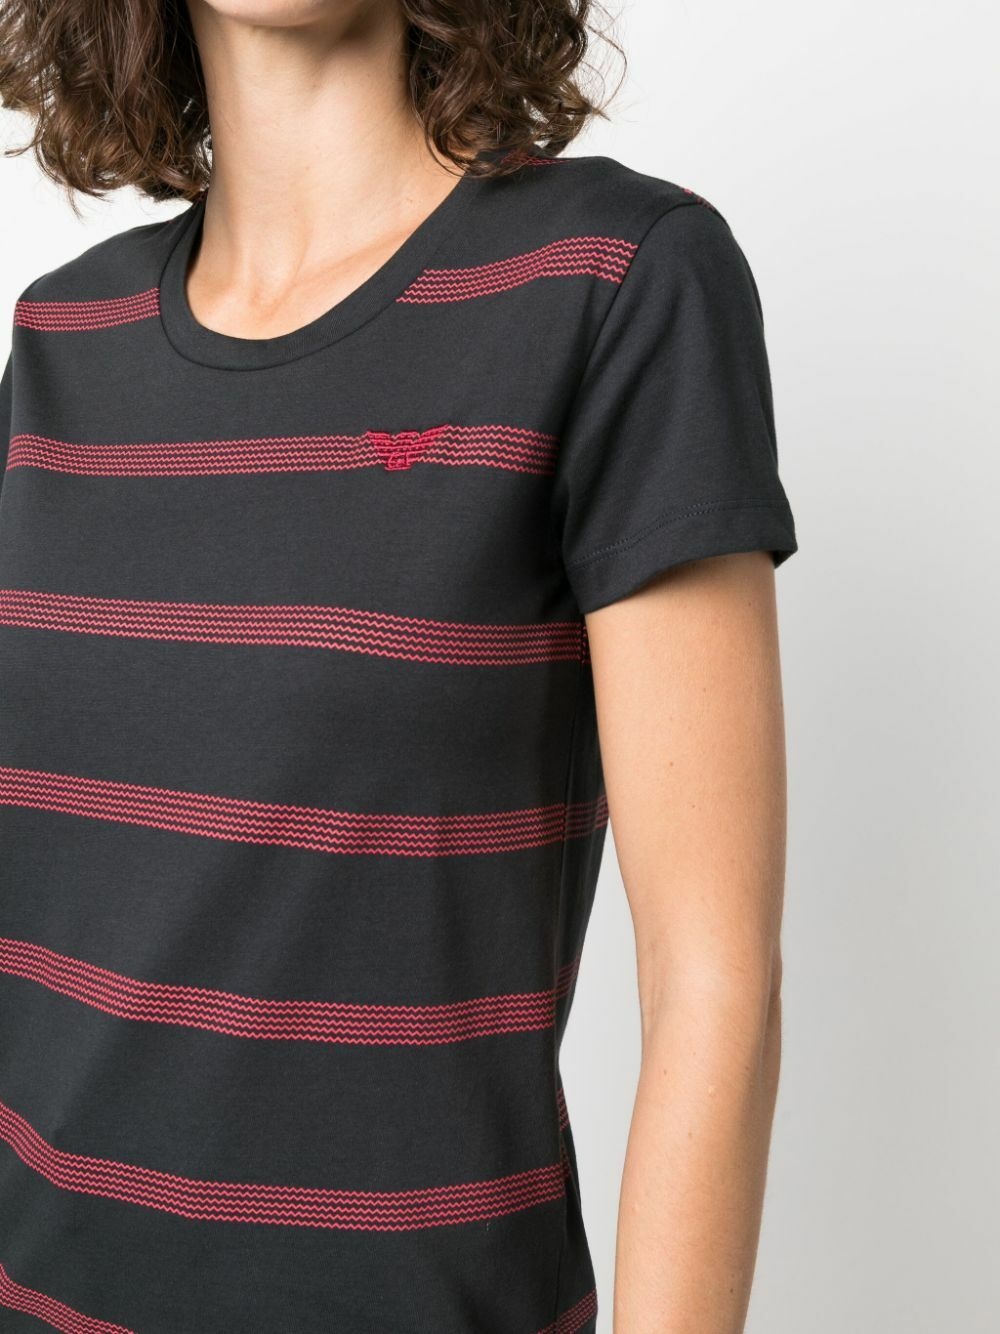 EMPORIO ARMANI - Striped Cotton T-shirt